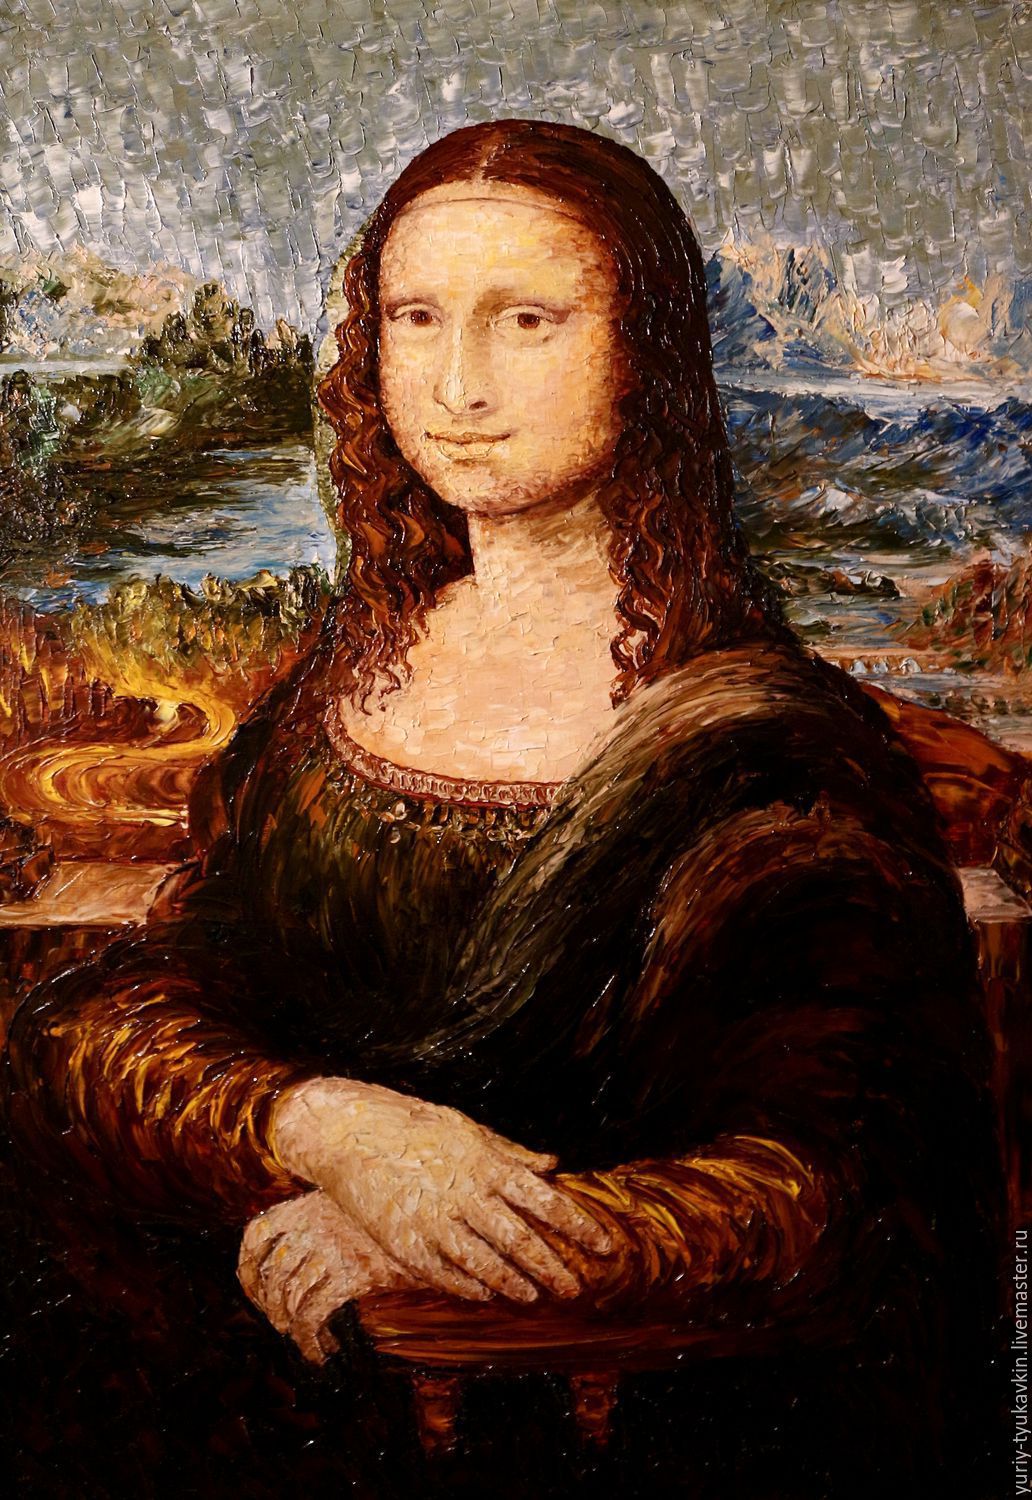 Моно. Мона Лиза Джоконда. «Мона Лиза» (1503–1519). Джоконда Леонардо да Винчи. Мона Лиза Джоконда картина.